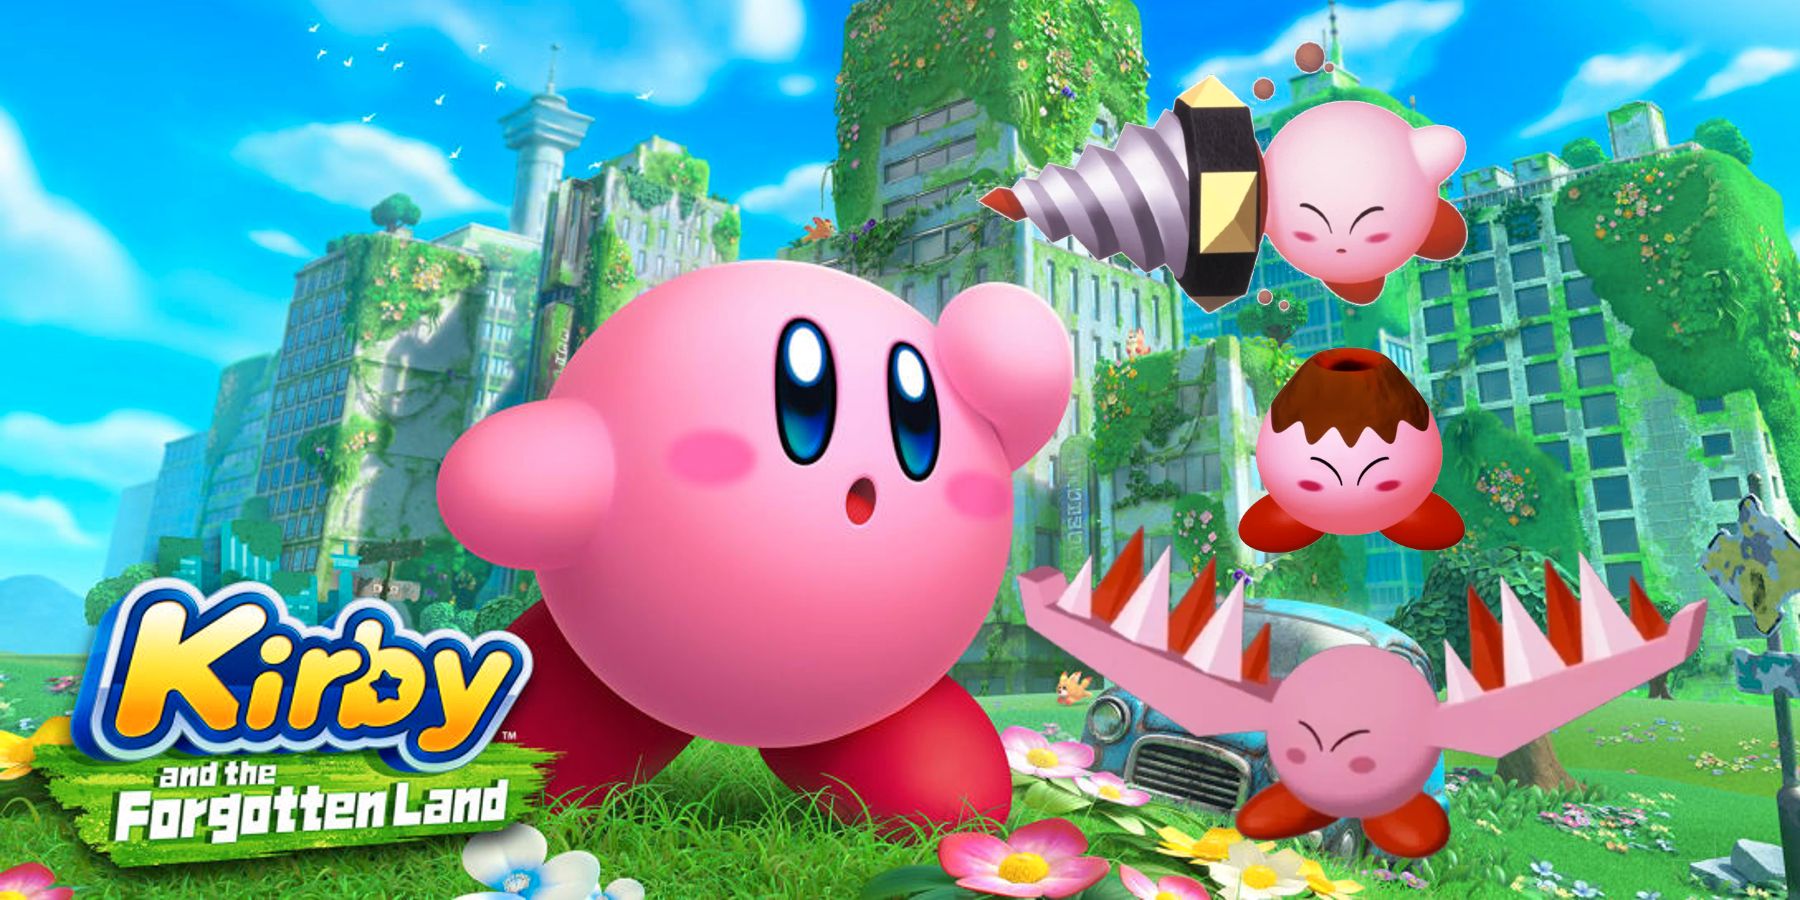 Ο Kirby and the Forgotten Land πρέπει να επαναφέρει την ικανότητα ανάμειξης των κρυστάλλινων θραυσμάτων